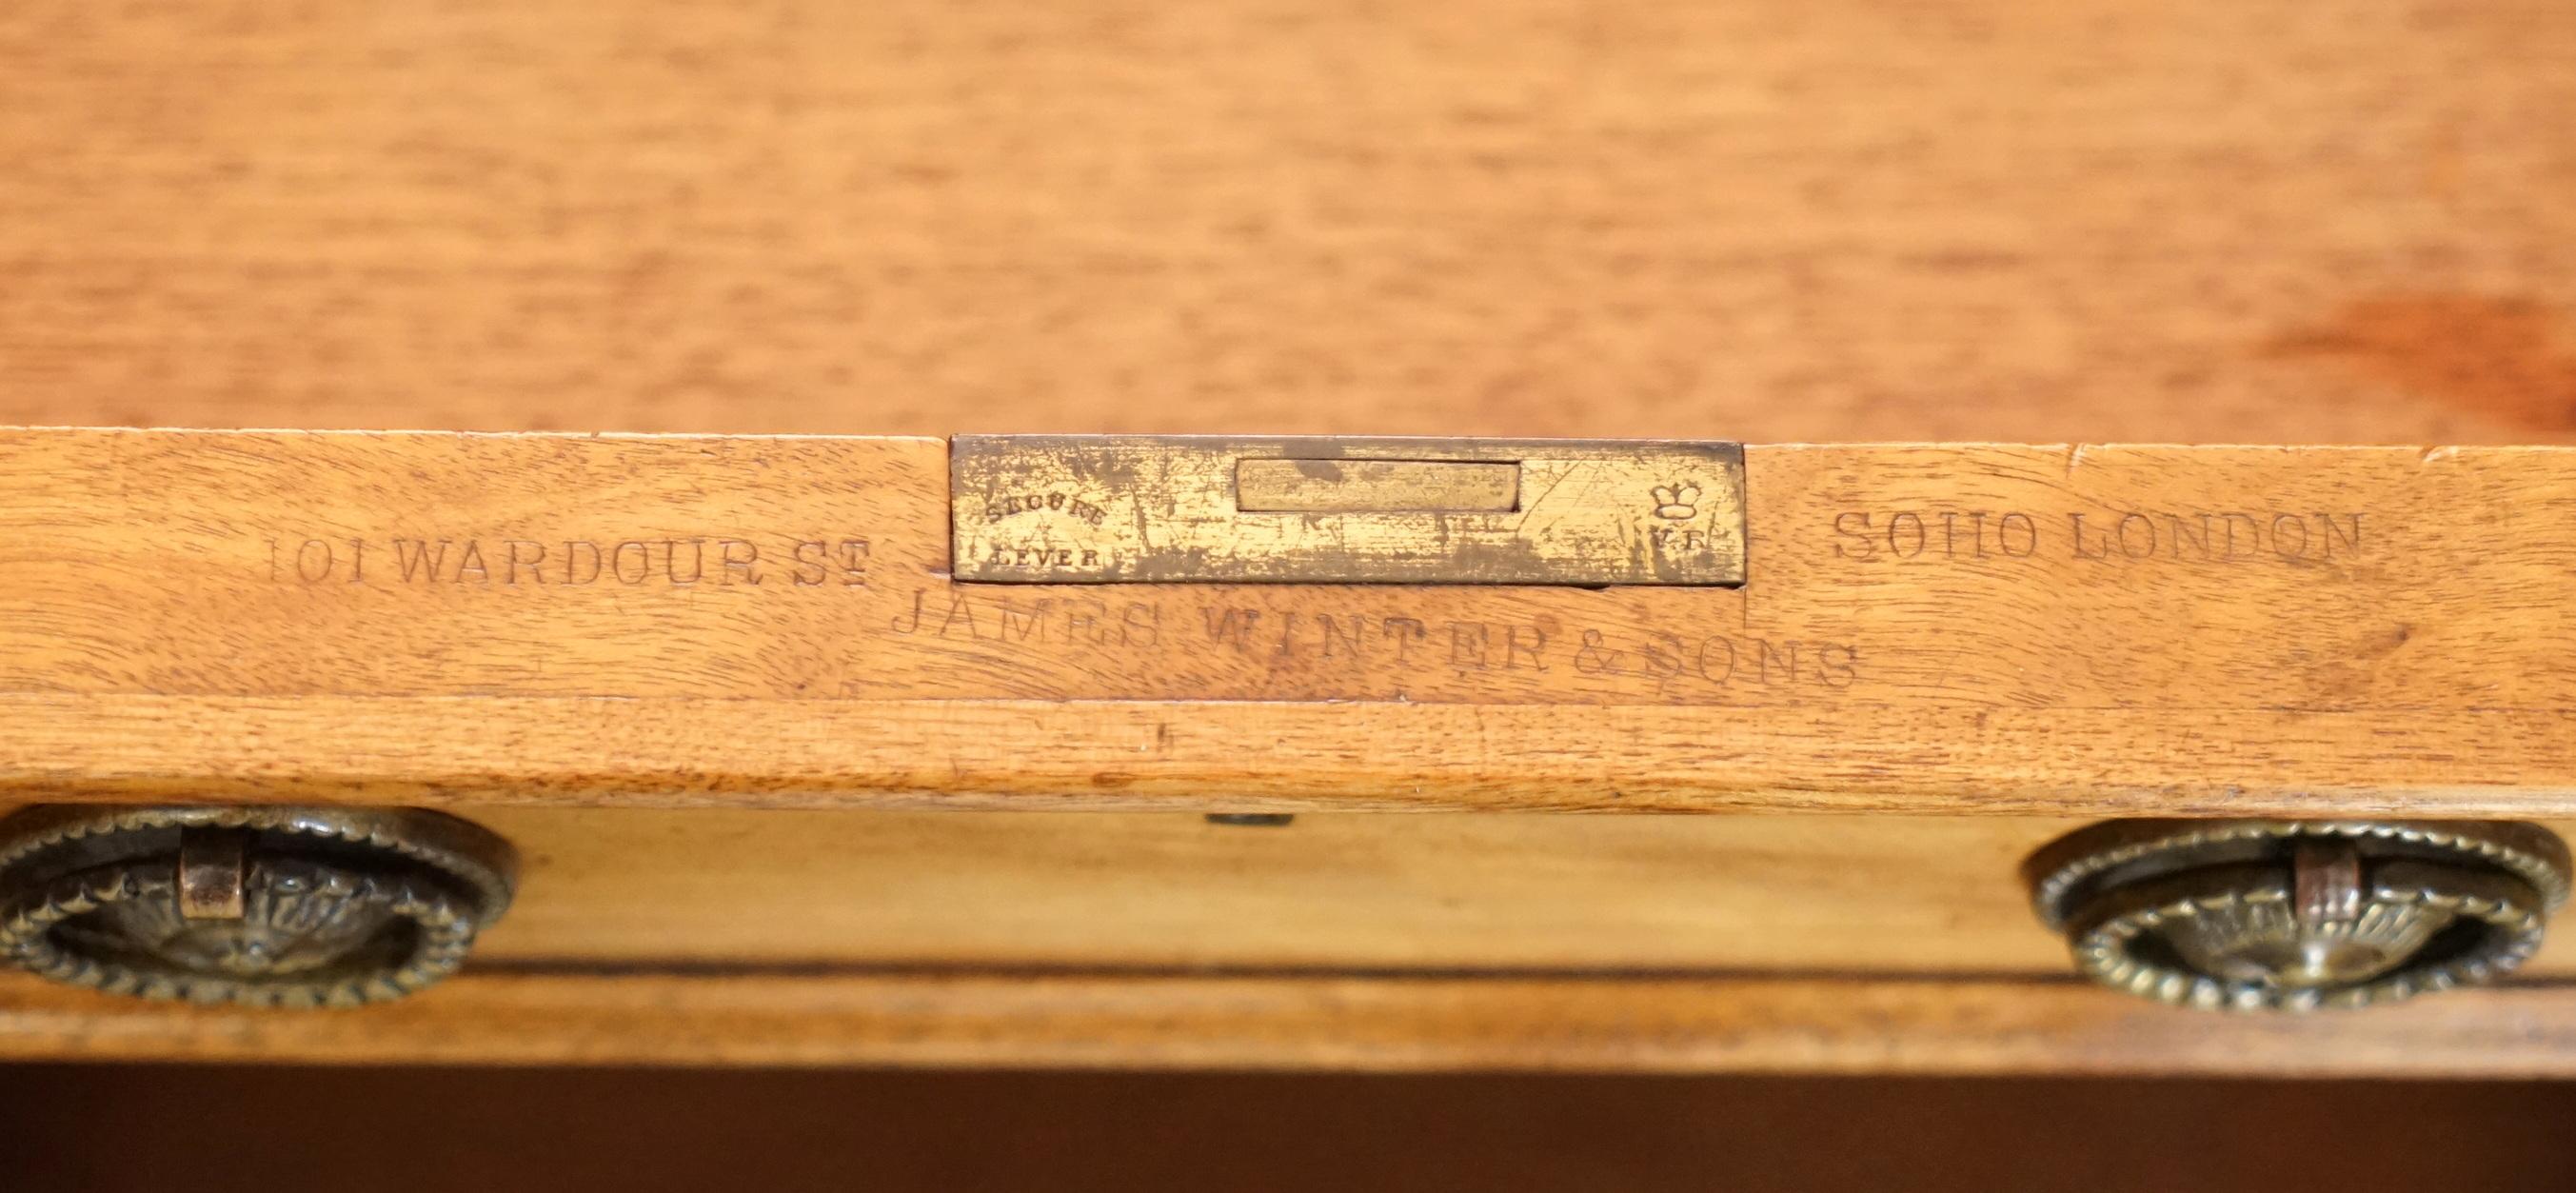 Wir freuen uns, dieses sehr seltene und wichtige Original James Winter & Son's 101 Wardour St Soho London Satinwood & Regency grünes Leder Partner Schreibtisch ca. 1830-1850 zum Verkauf anbieten zu können vollständig gestempelt

Dies ist ein sehr